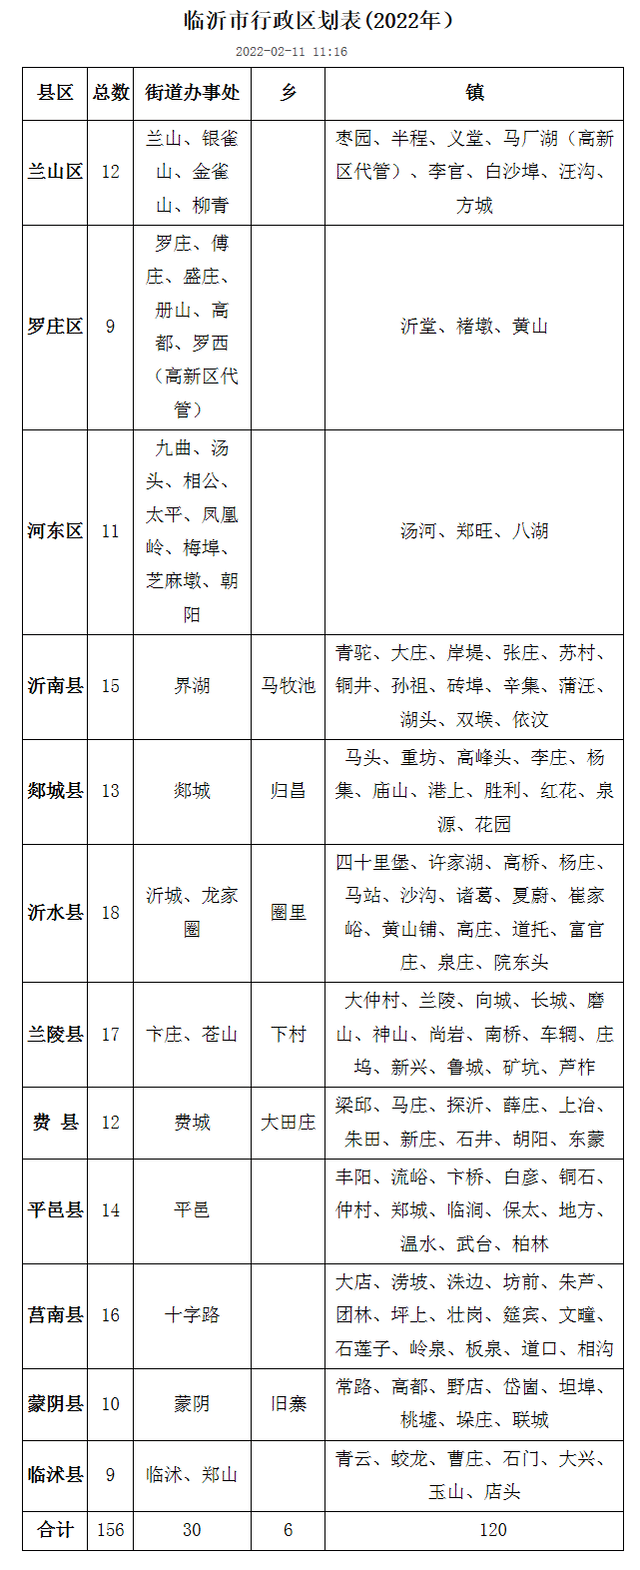 临沂市行政区划表(2022年）-临沂市民政局